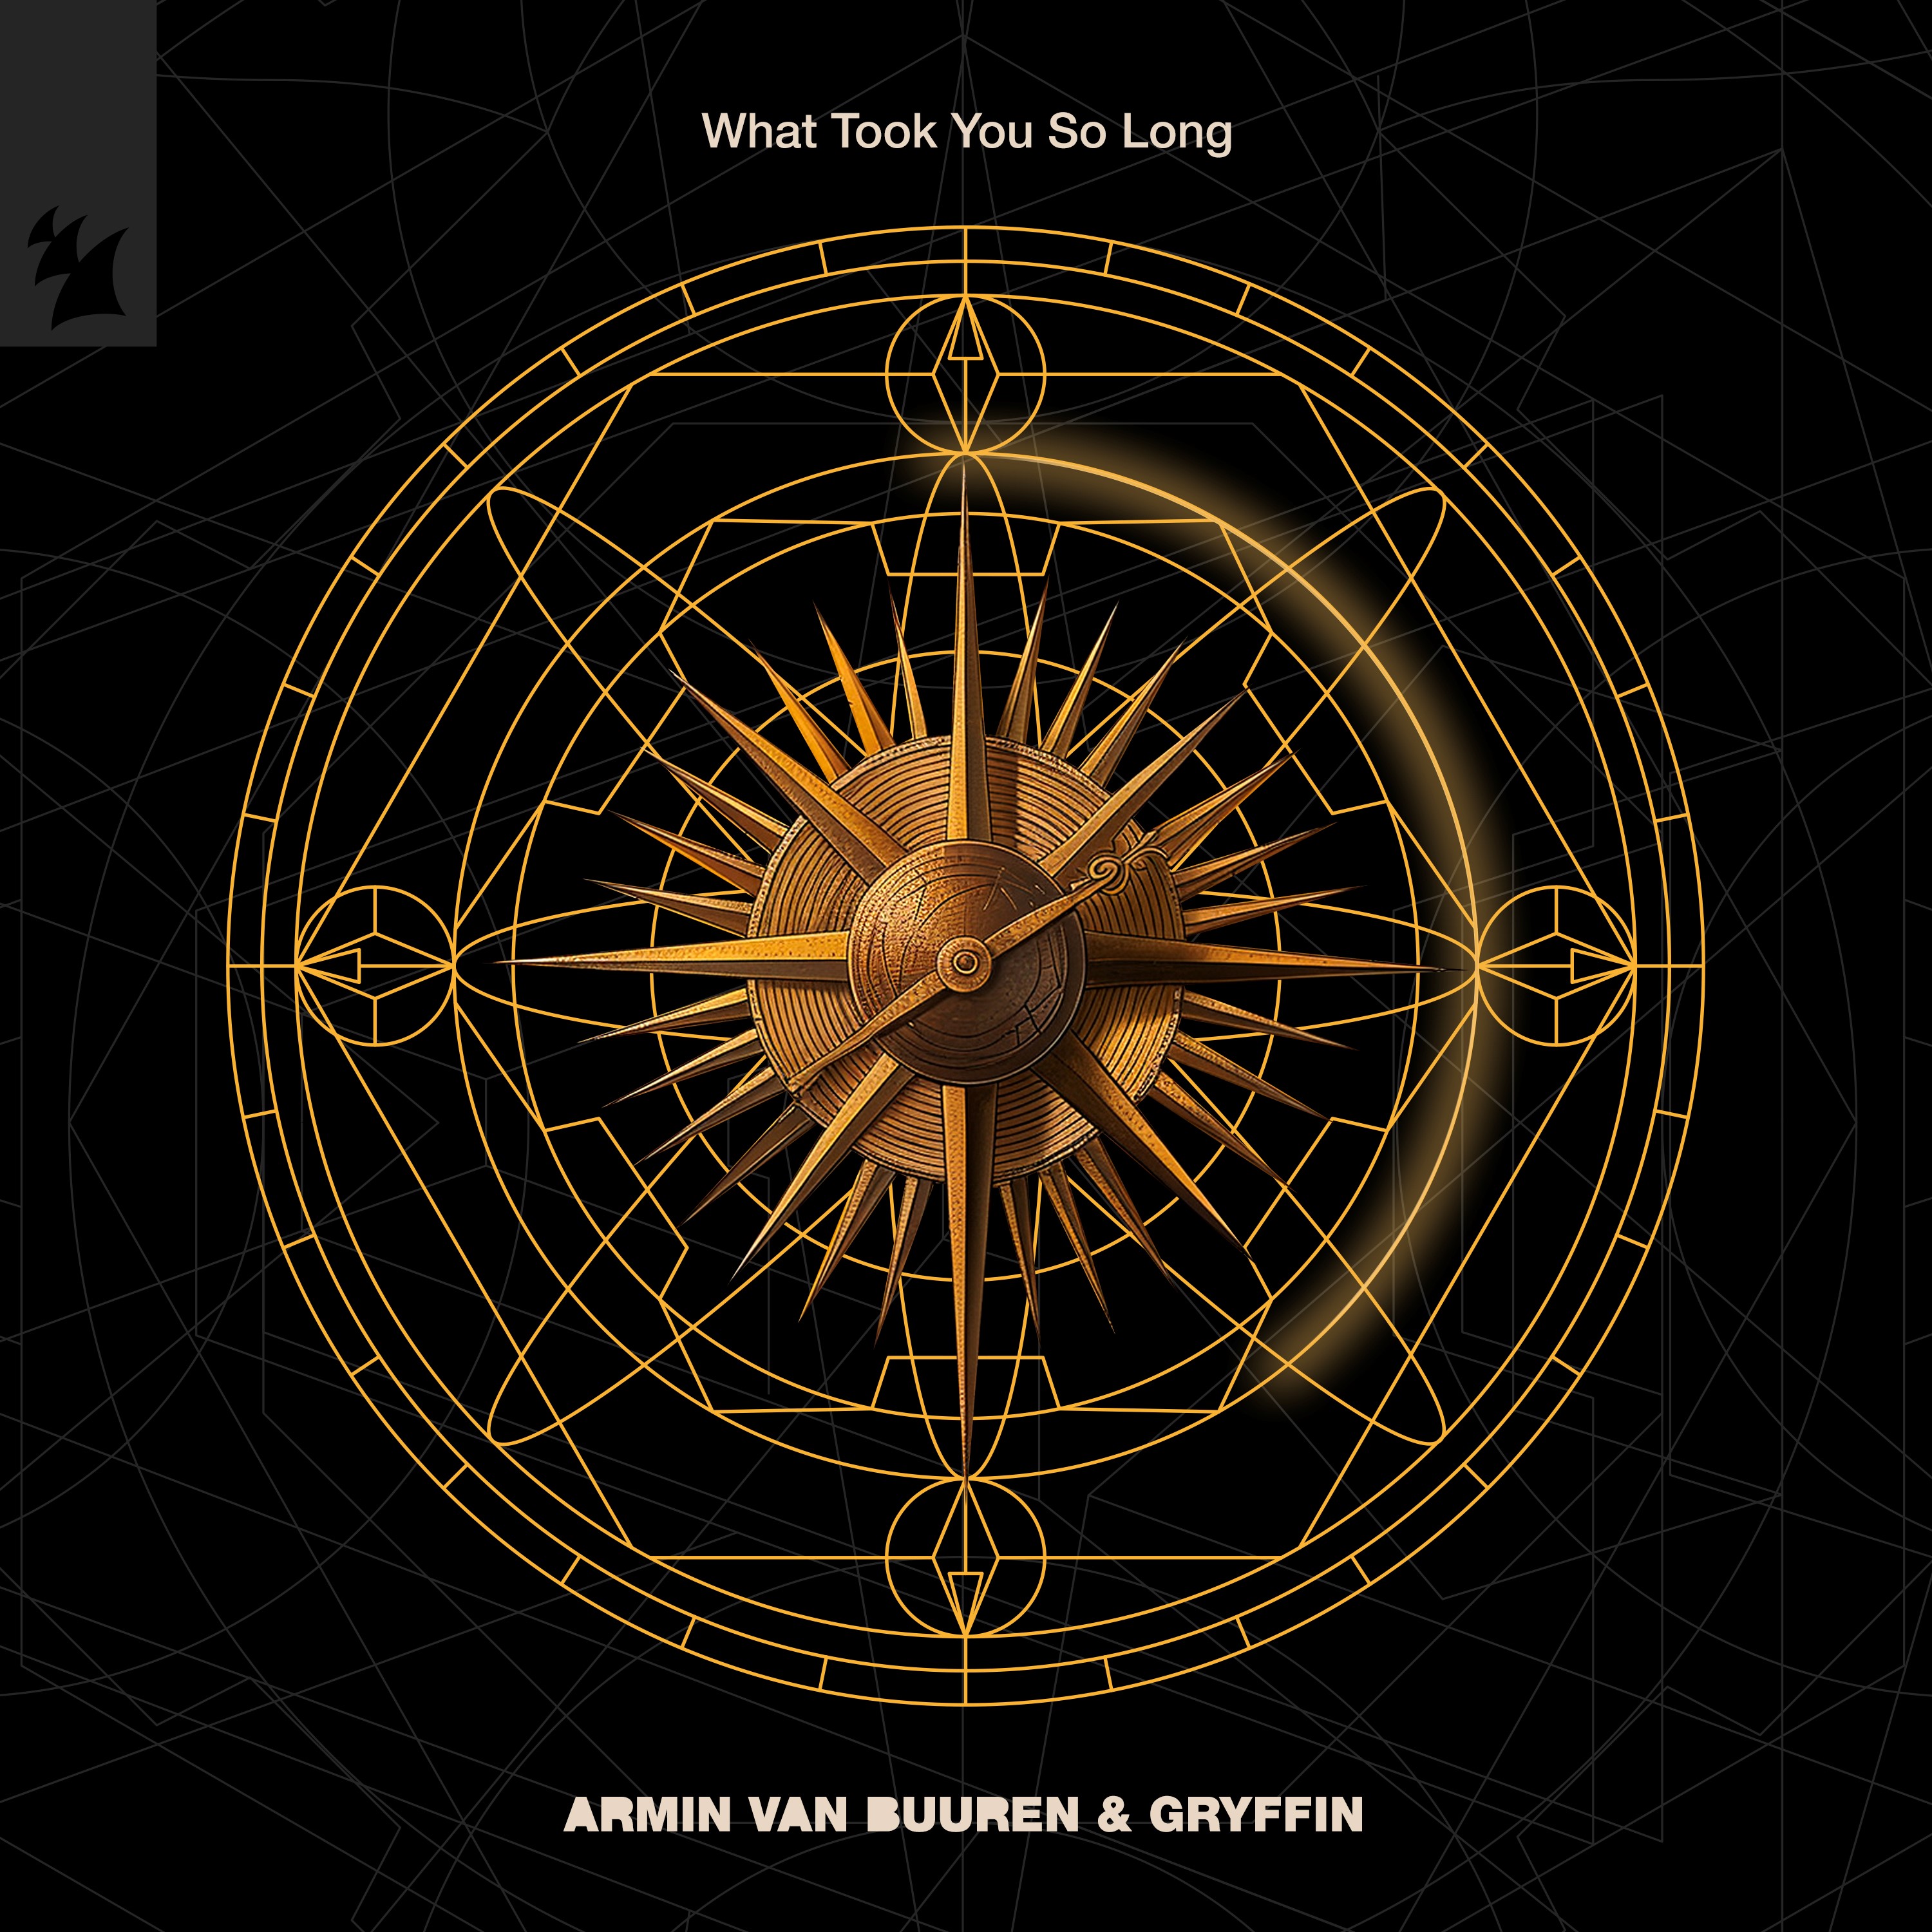  Armin Van Buuren y Gryffin unen fuerzas en “What Took You So Long”